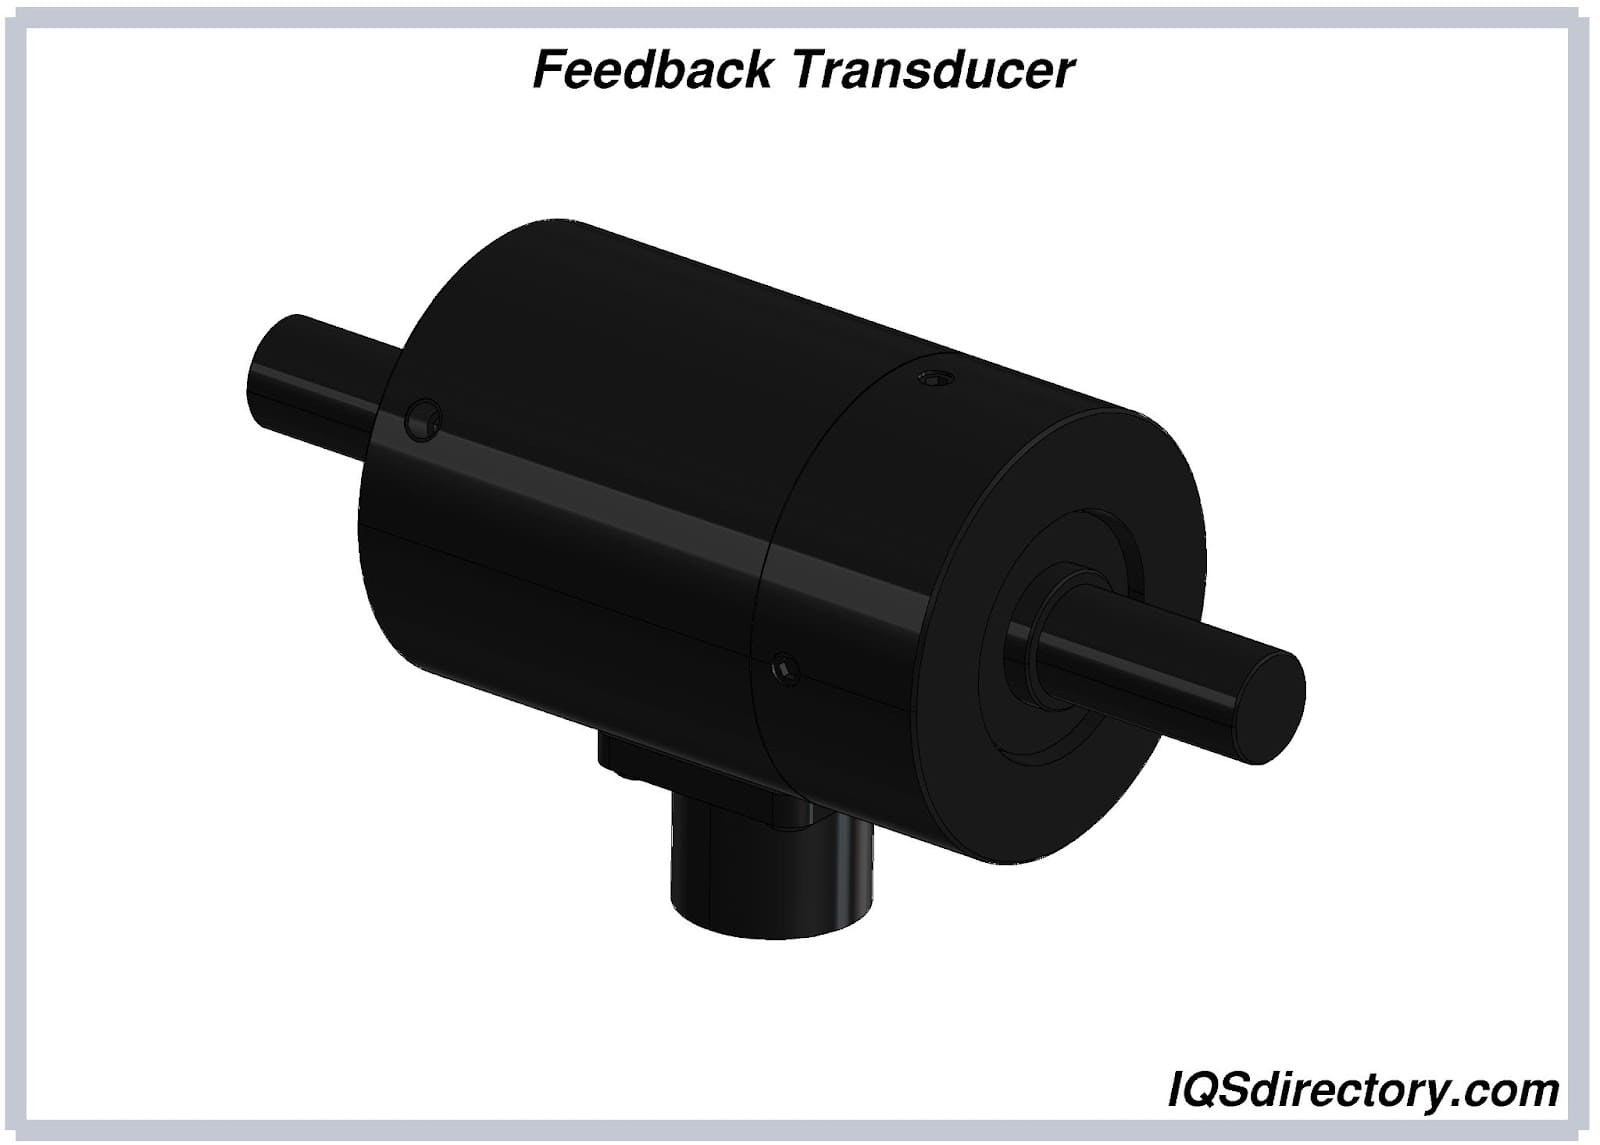 Feedback Transducer